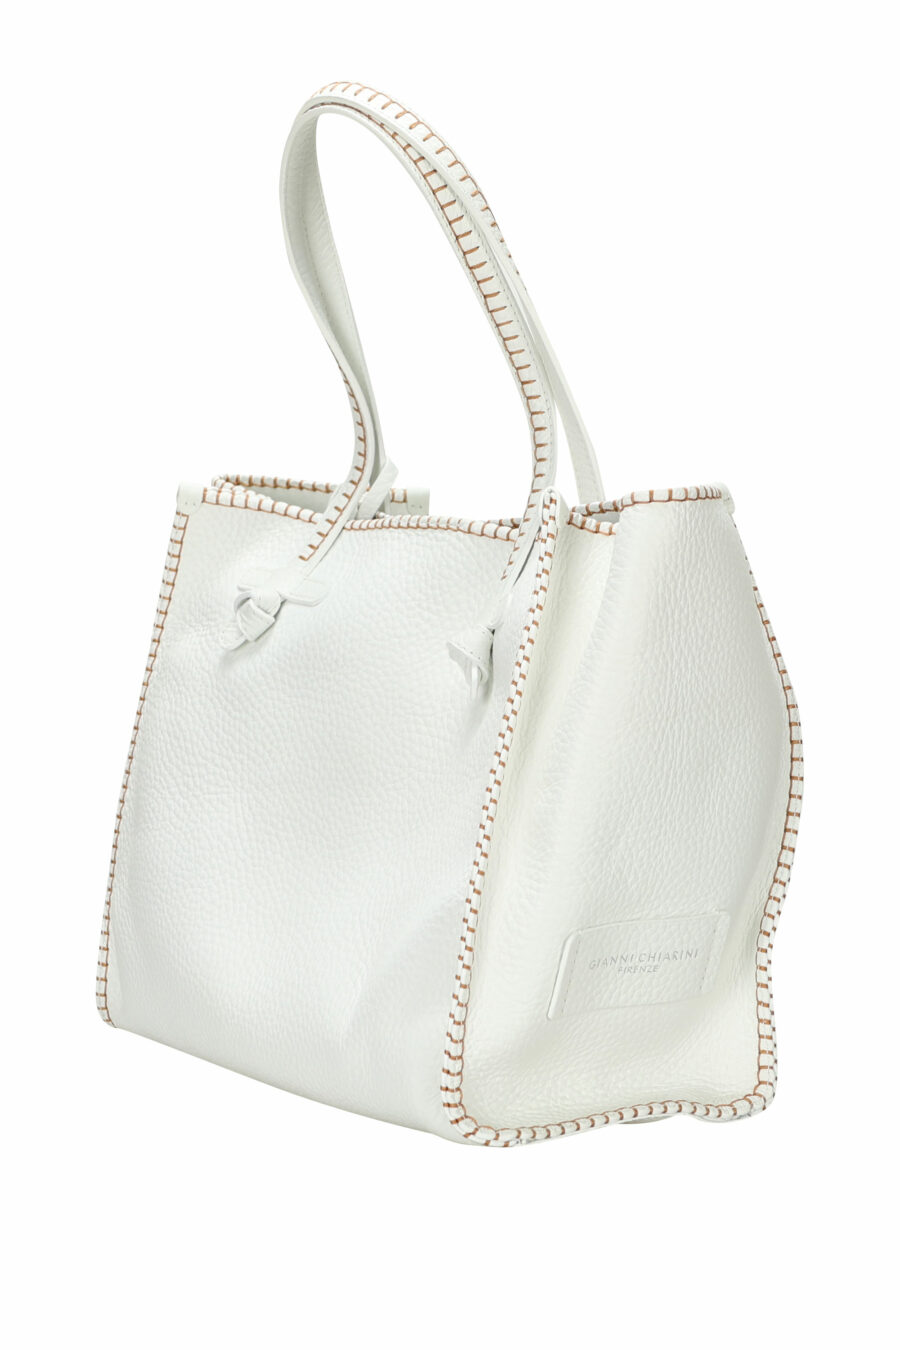 Shopper bag "Marcella" white and minilogo - 8057145900445 1